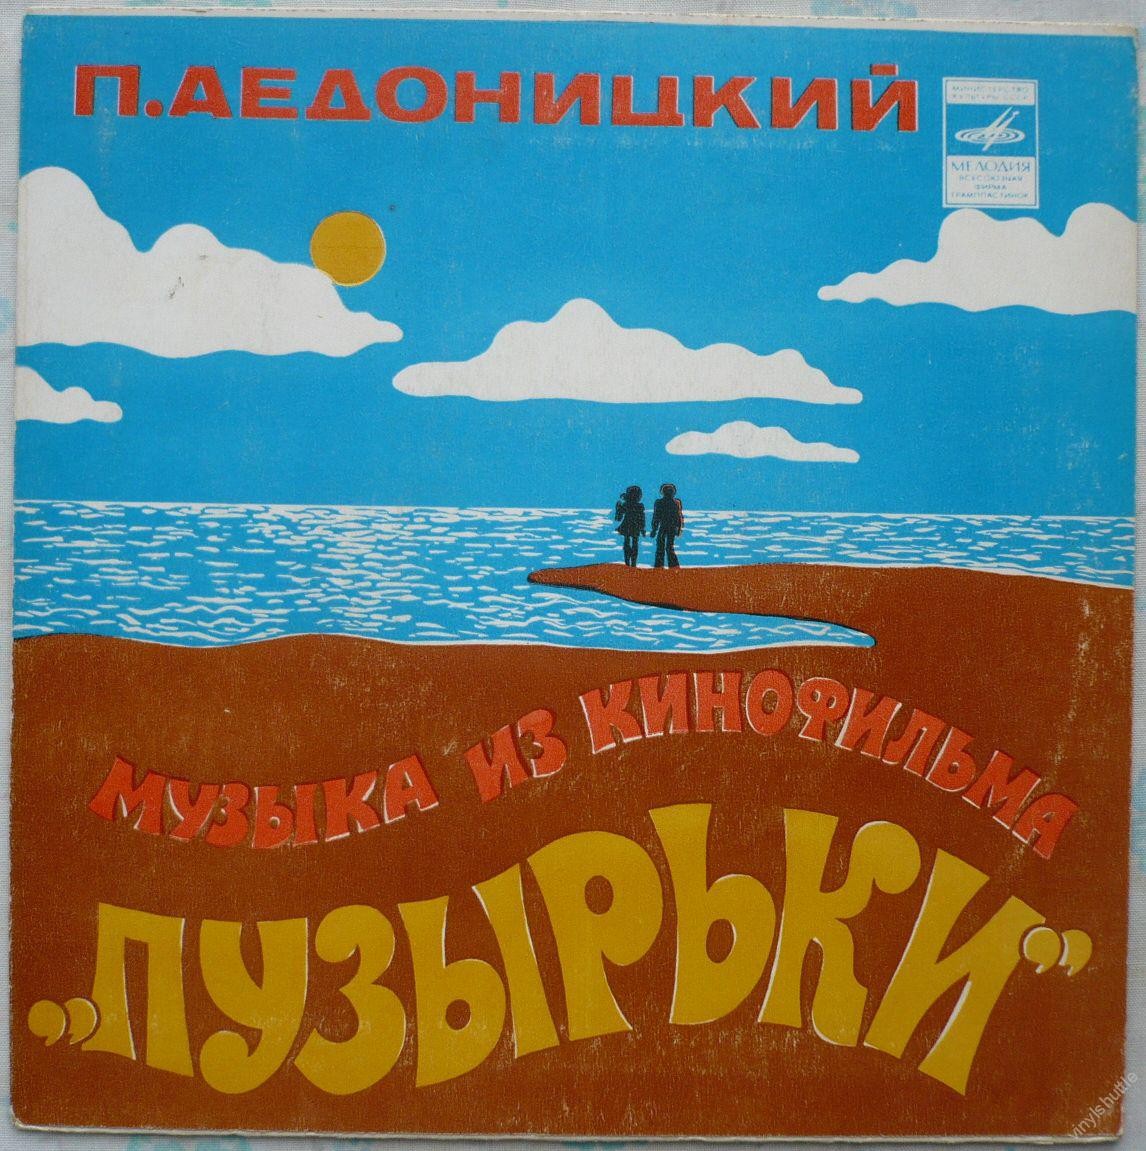 П. АЕДОНИЦКИЙ (1922). МУЗЫКА ИЗ КИНОФИЛЬМА «ПУЗЫРЬКИ»